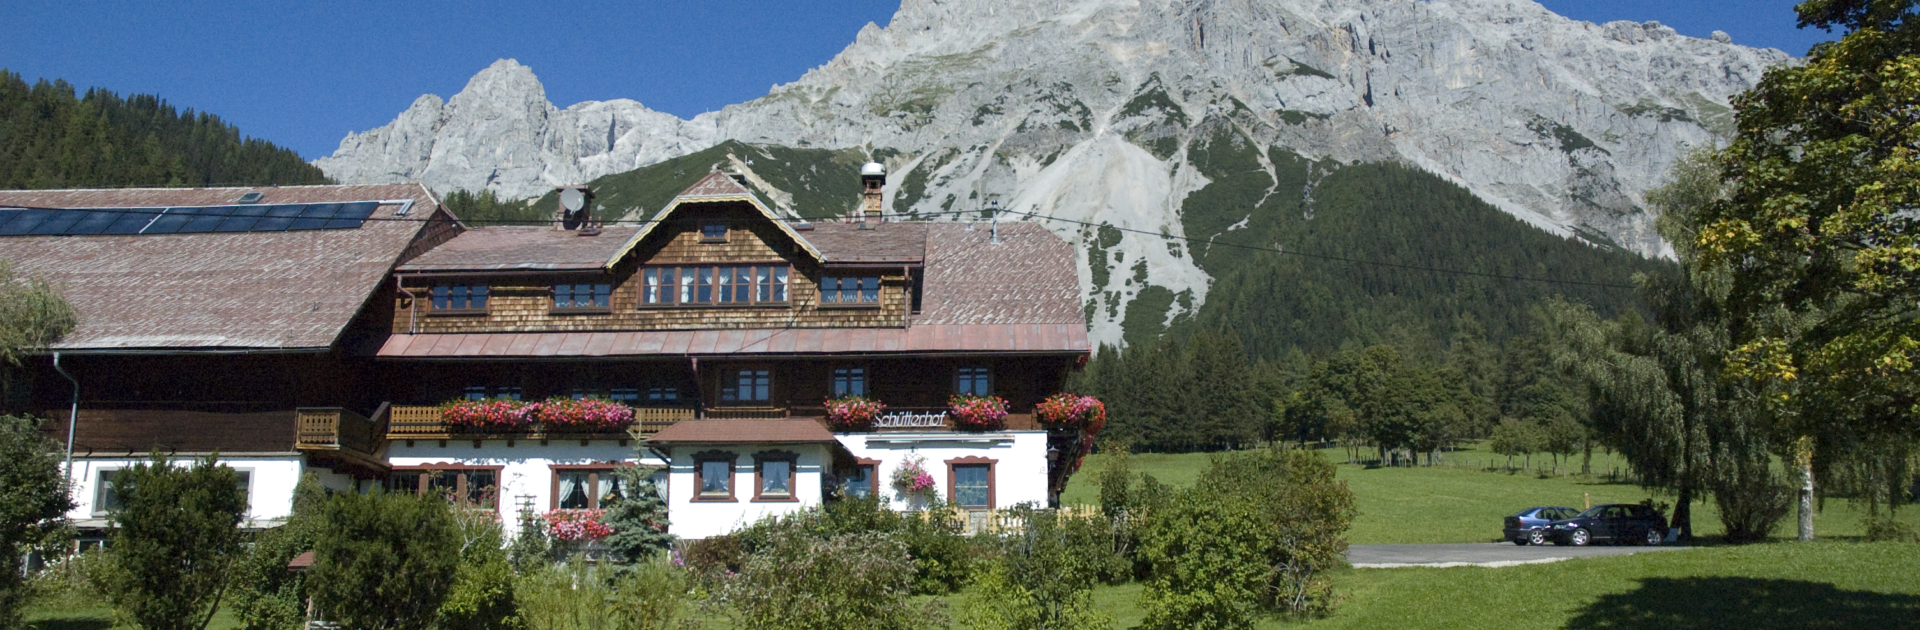 Schütterhof in Ramsau am Dachstein